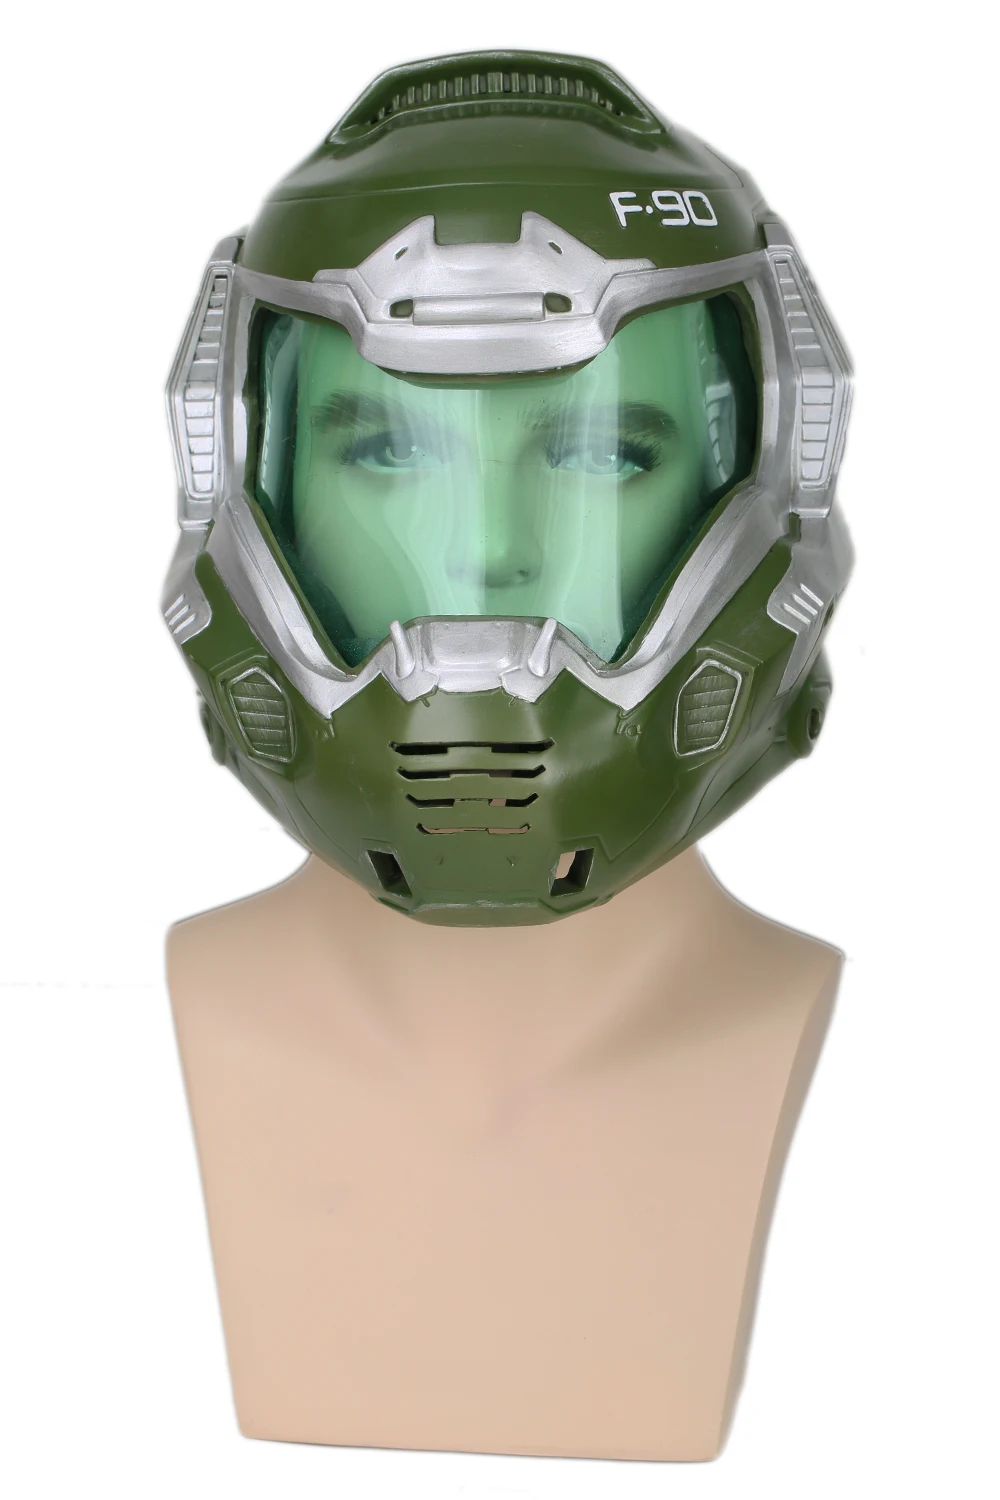 Doom Doomguy Game Version Helmet Cosplay mask Costume Accessories for ...